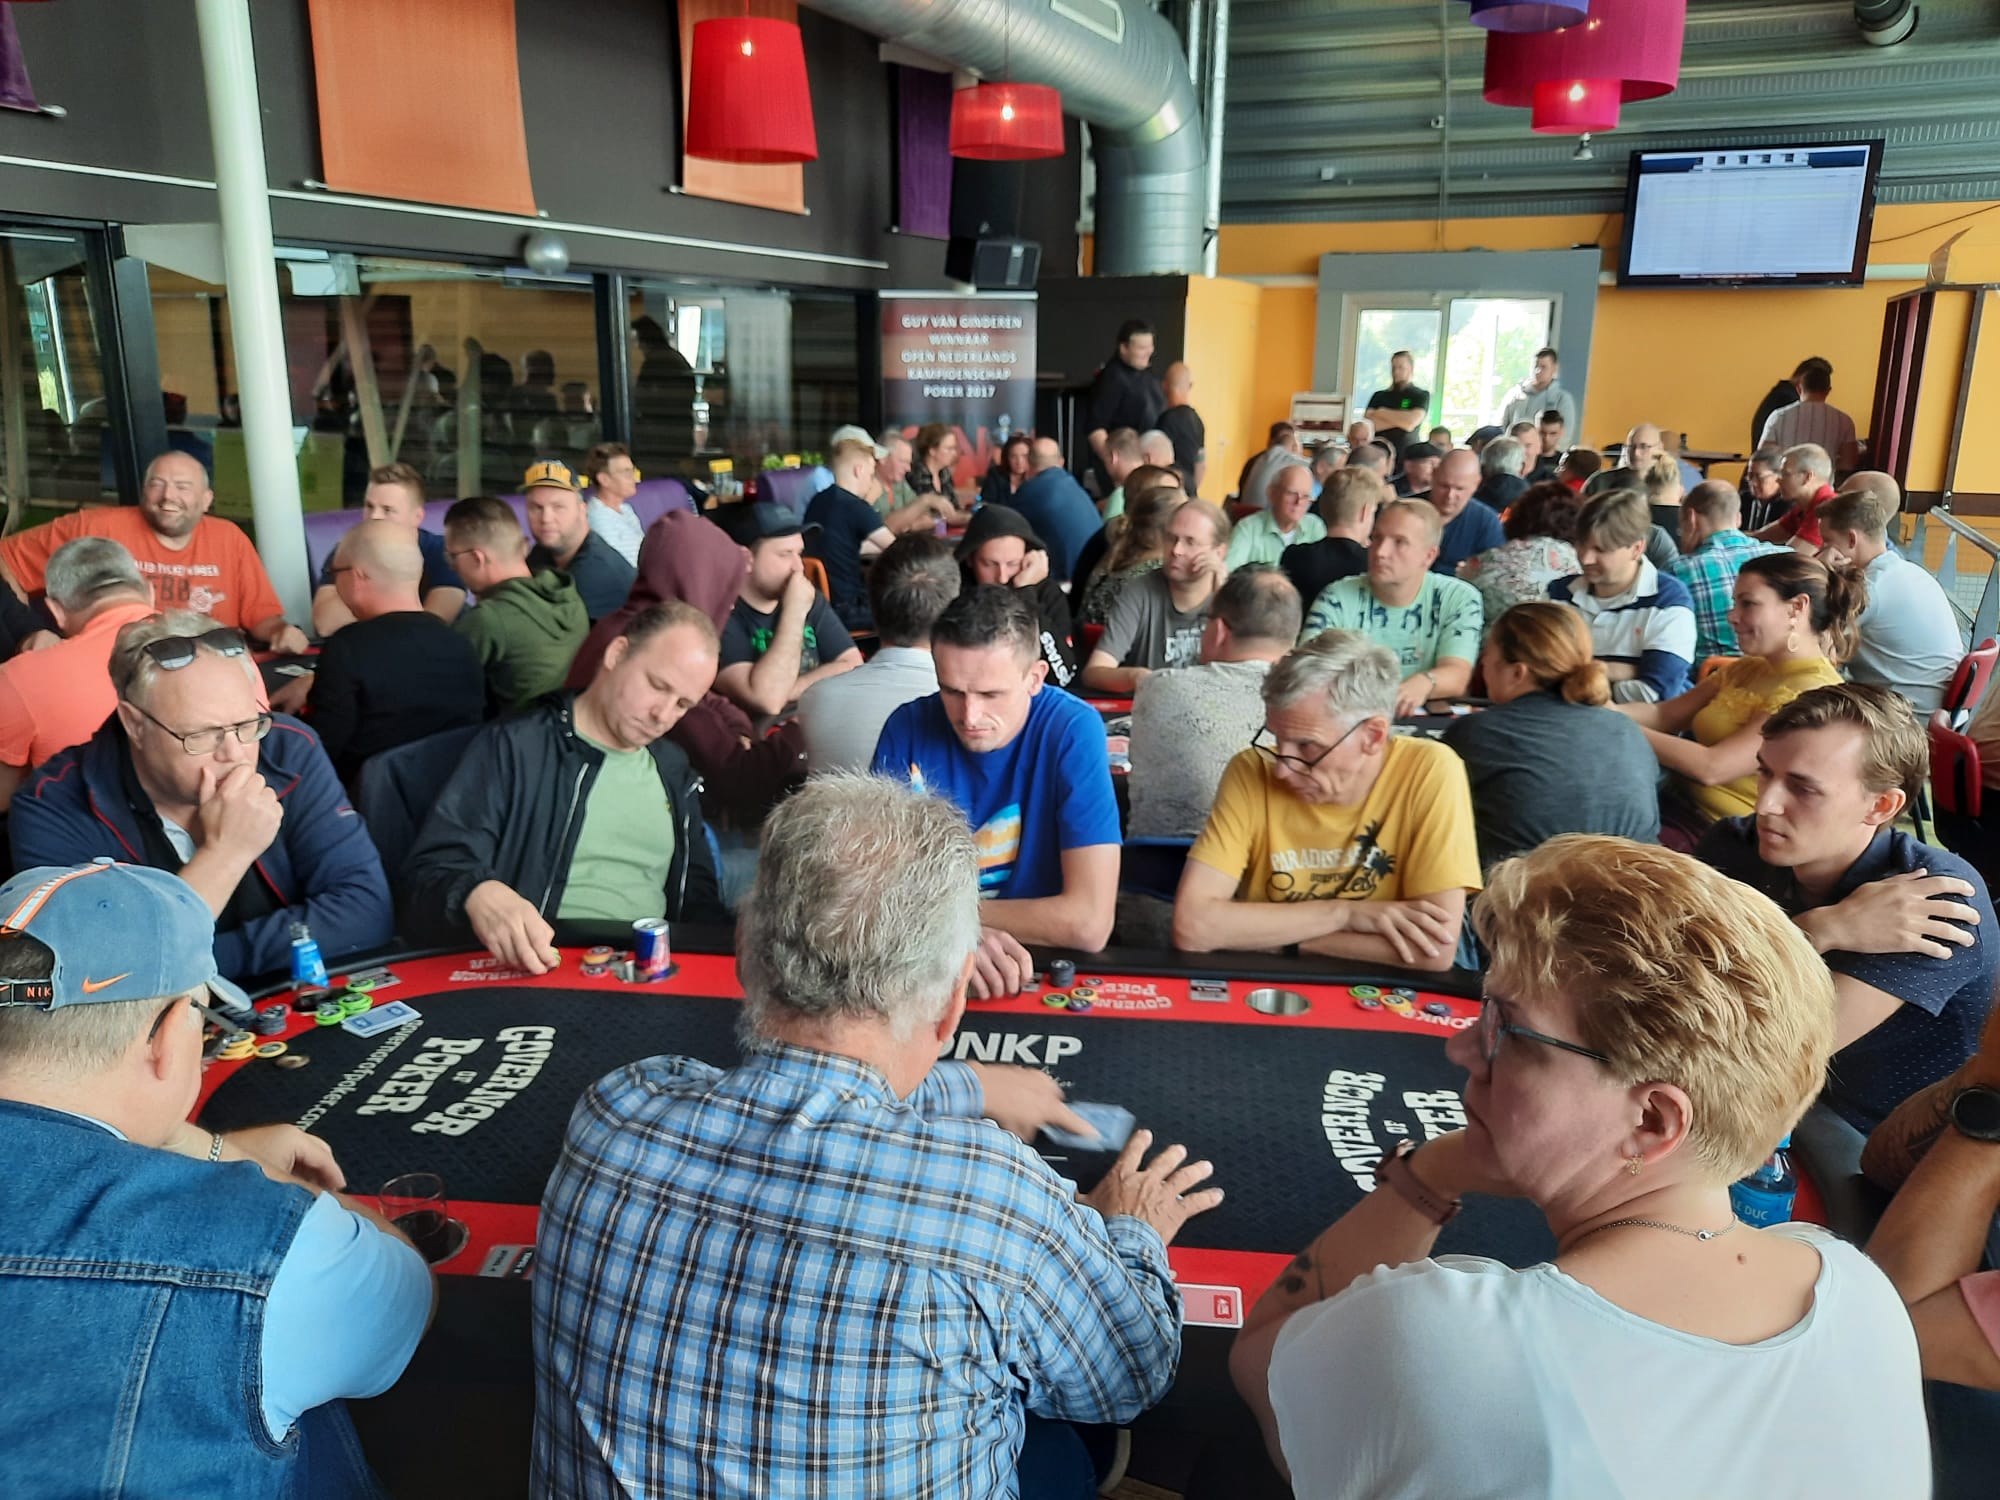 Pokerkampioenschap van Utrecht